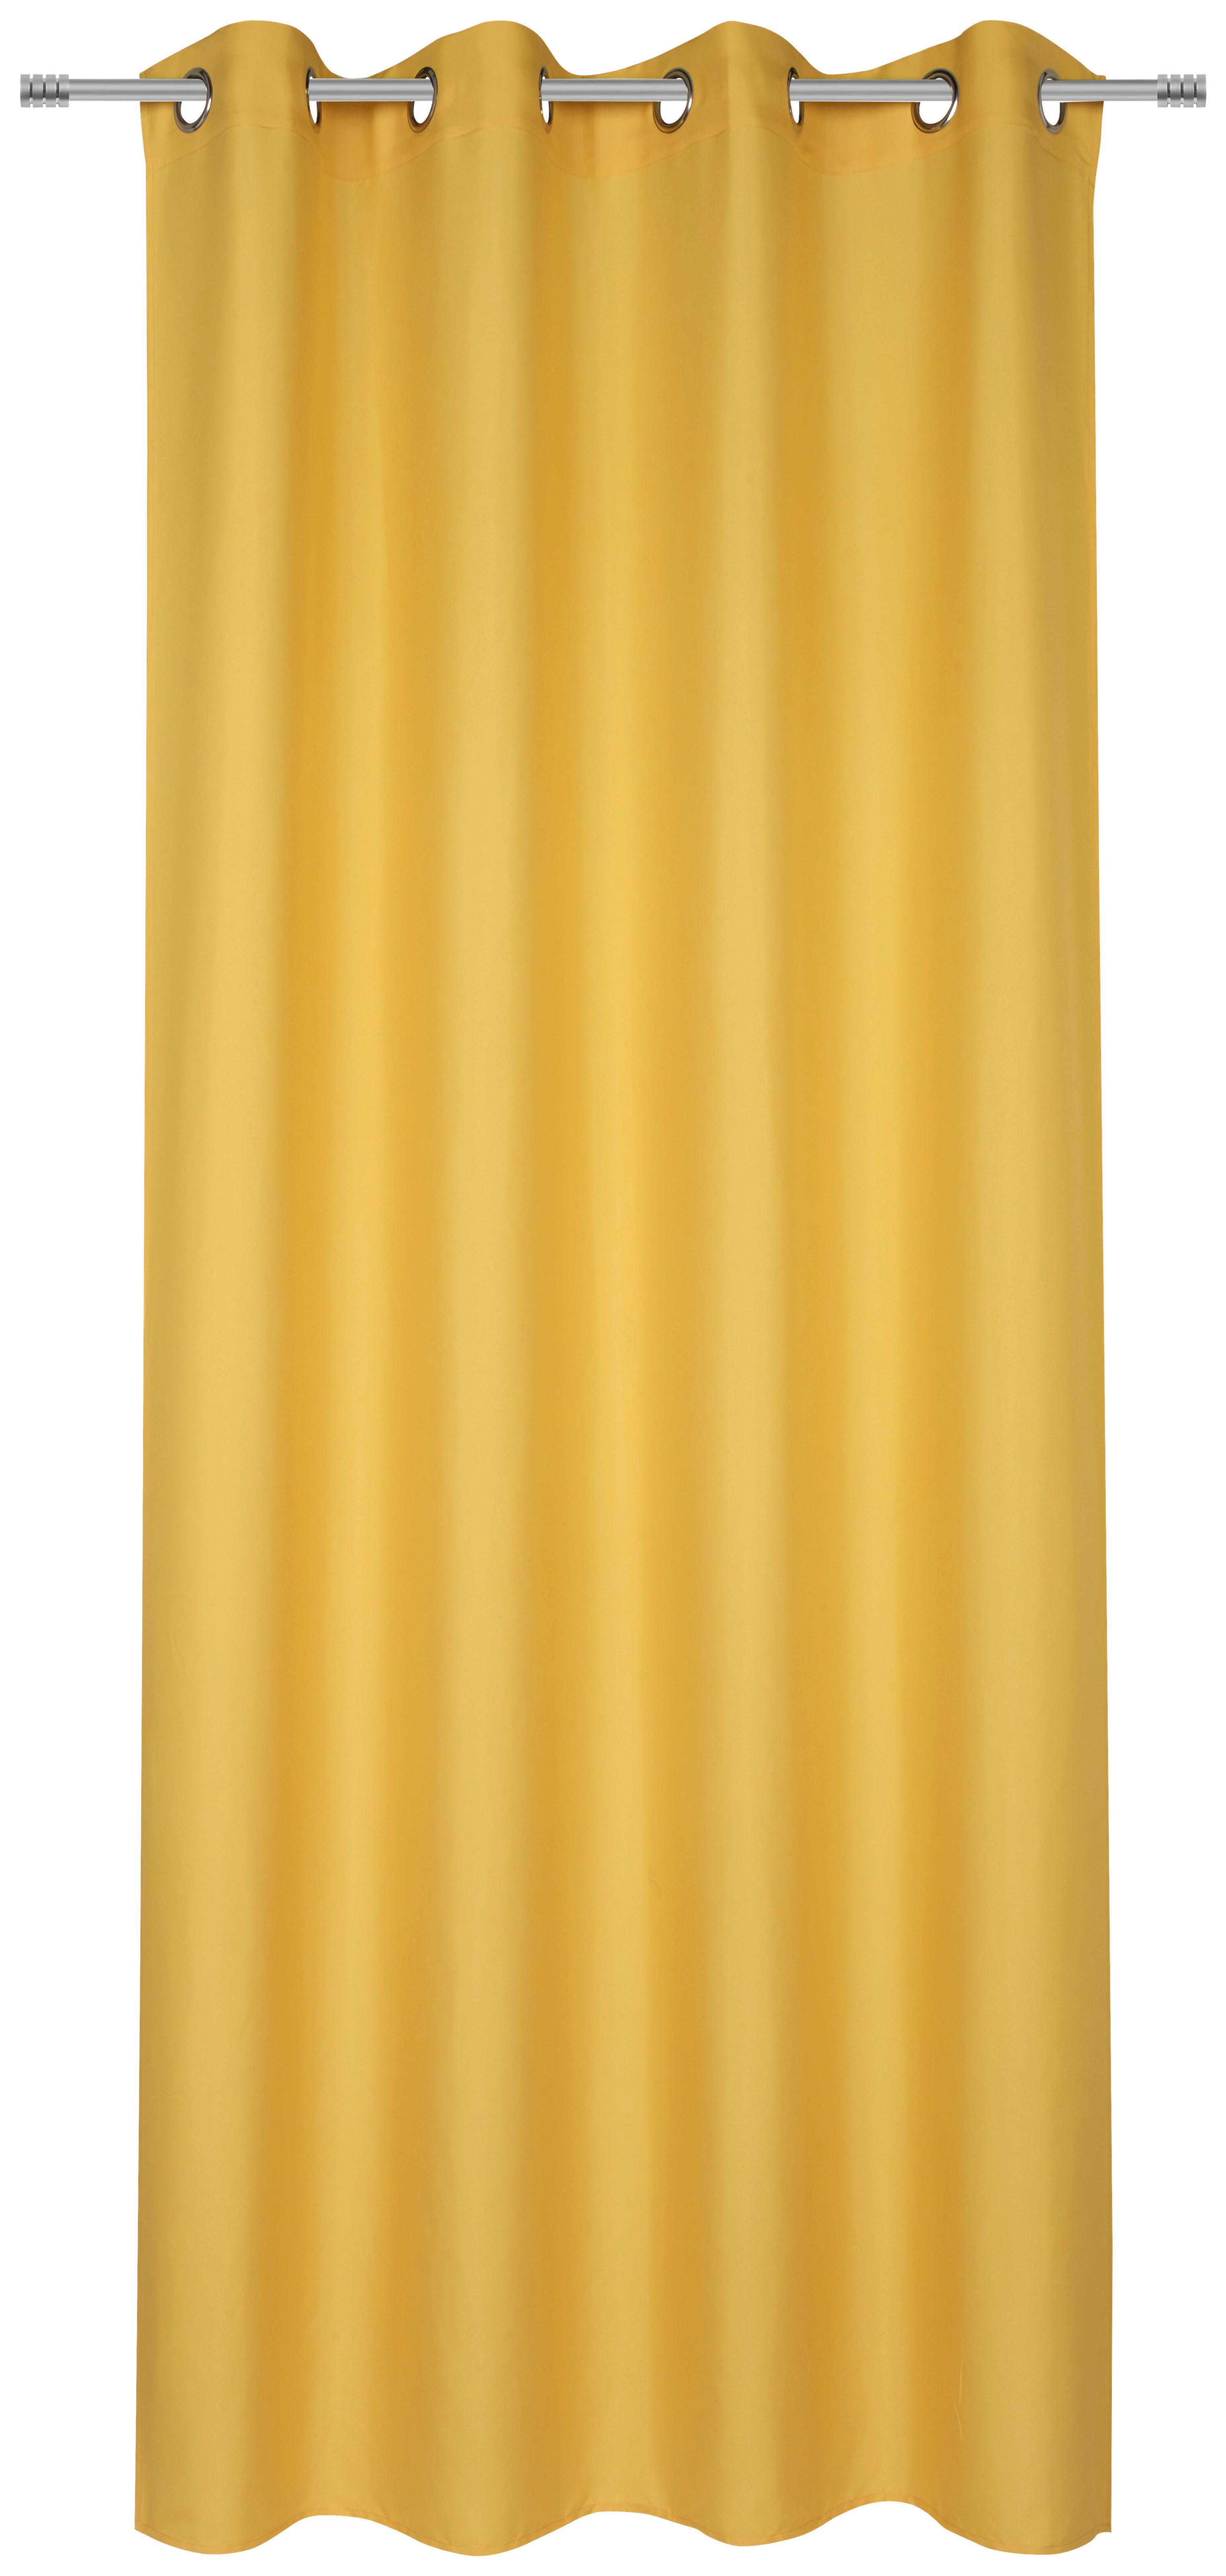 Záves S Krúžkami Abby, 140/235 Cm - žltá, Konvenčný, textil (140/235cm) - Modern Living